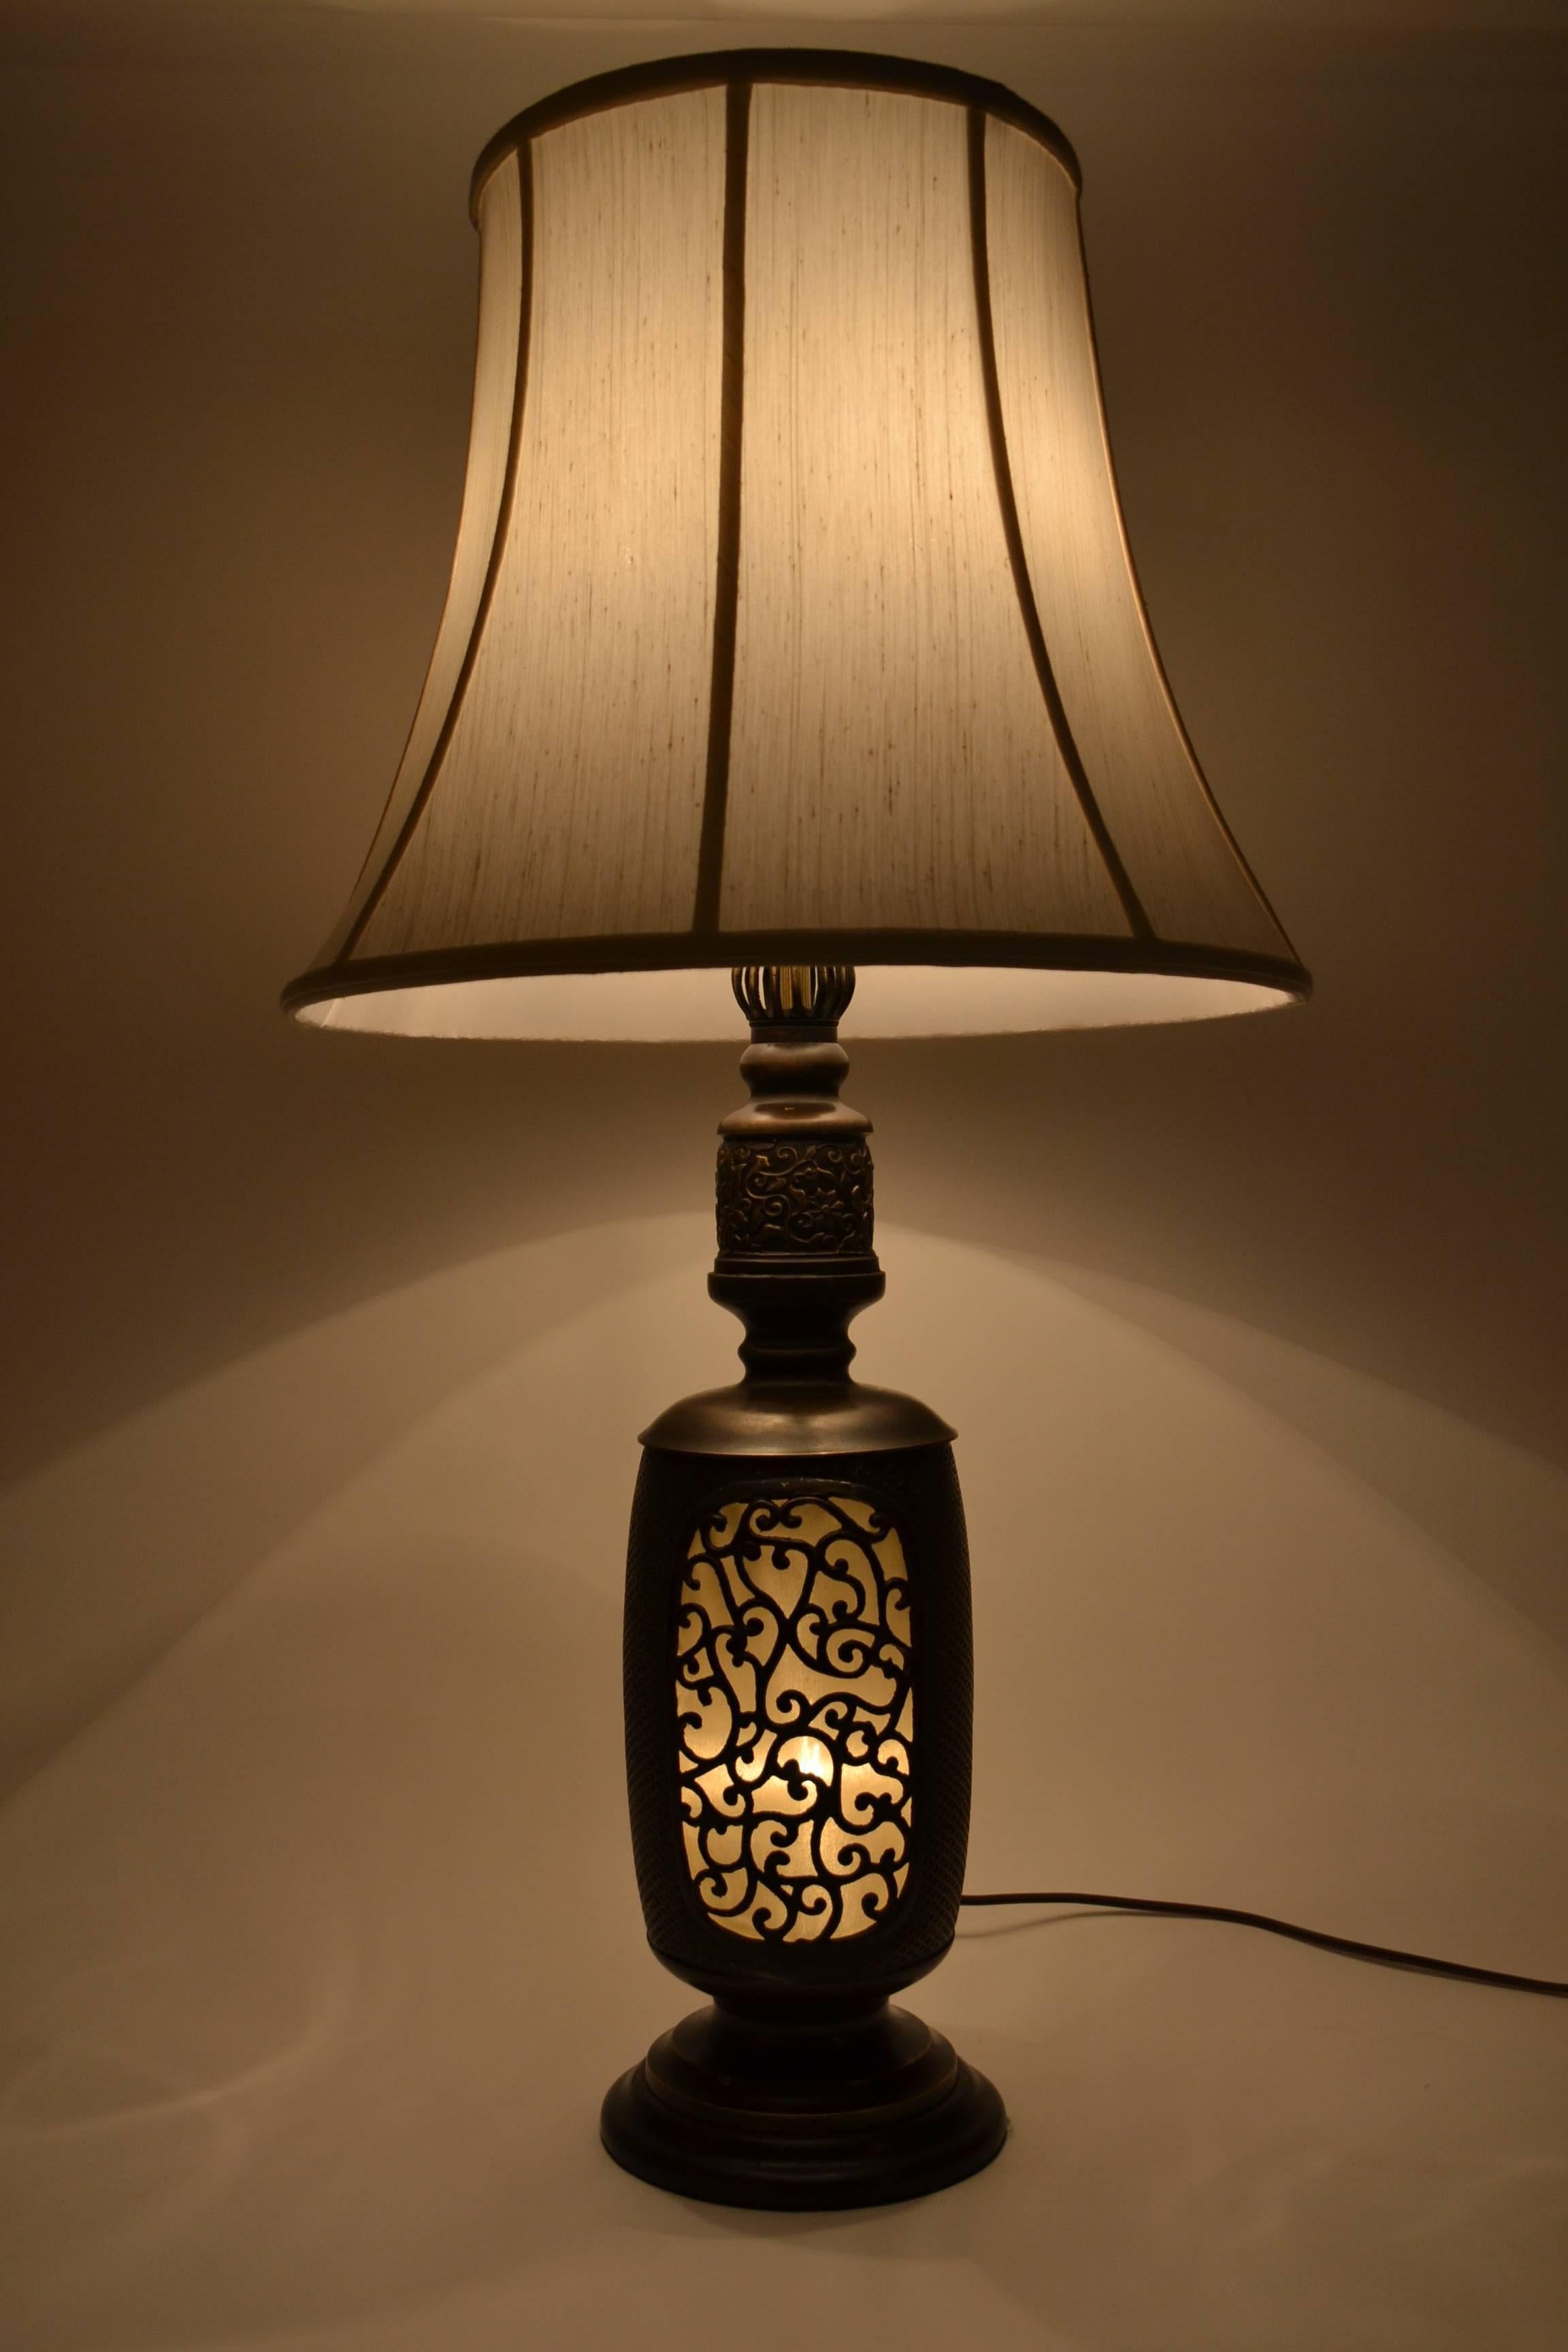 C'est une lampe vraiment cool faite à partir d'une vieille lanterne. La lumière est magnifique à travers la base décorative de la lanterne.